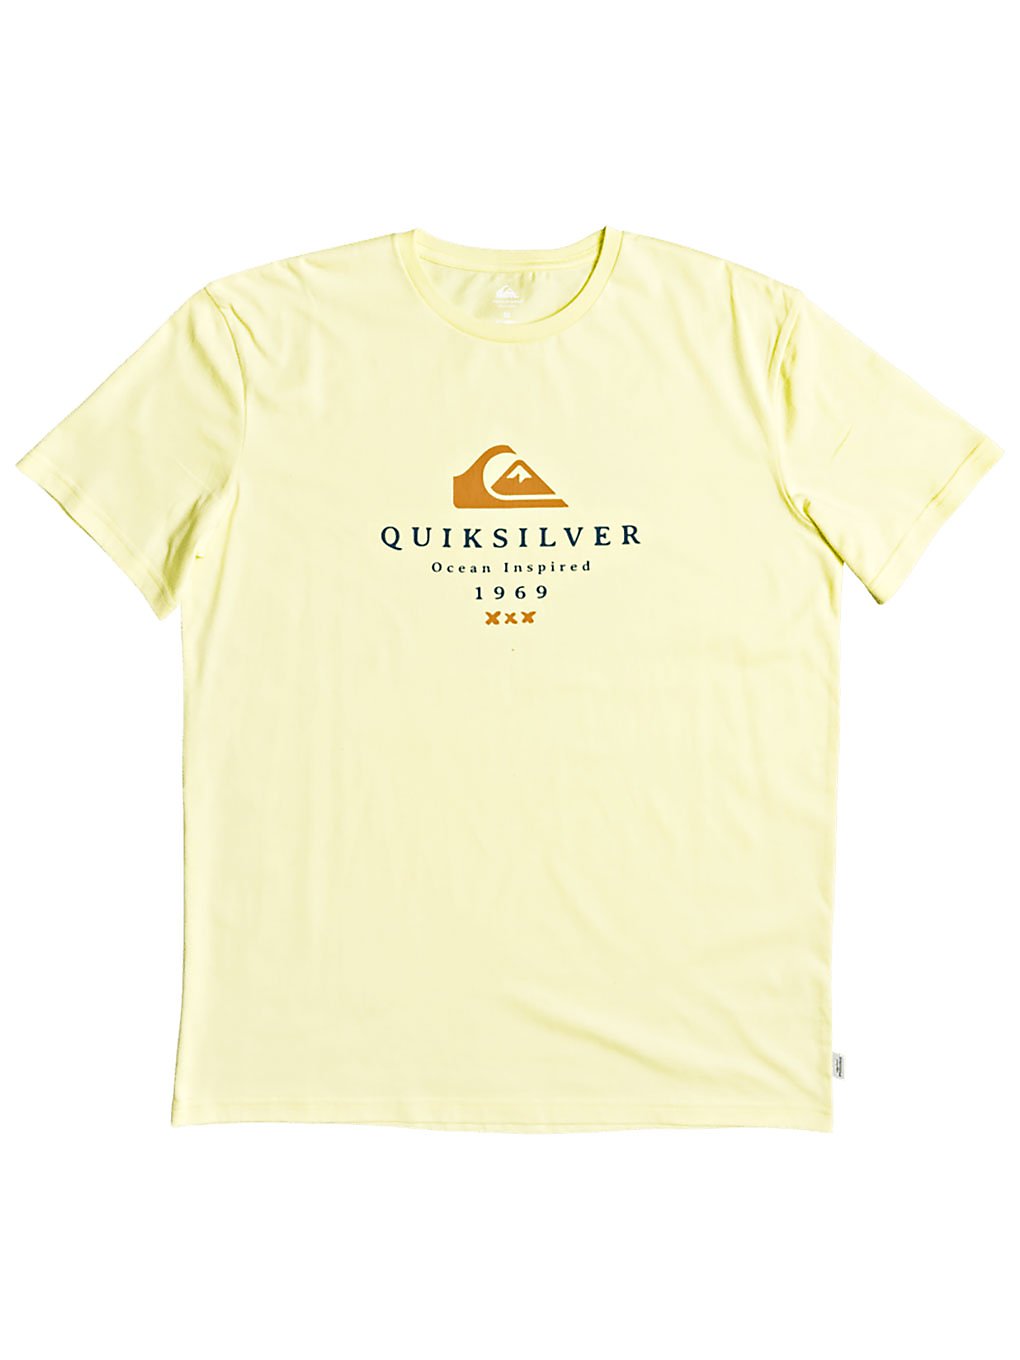 Quiksilver First Fire T-Shirt charlock